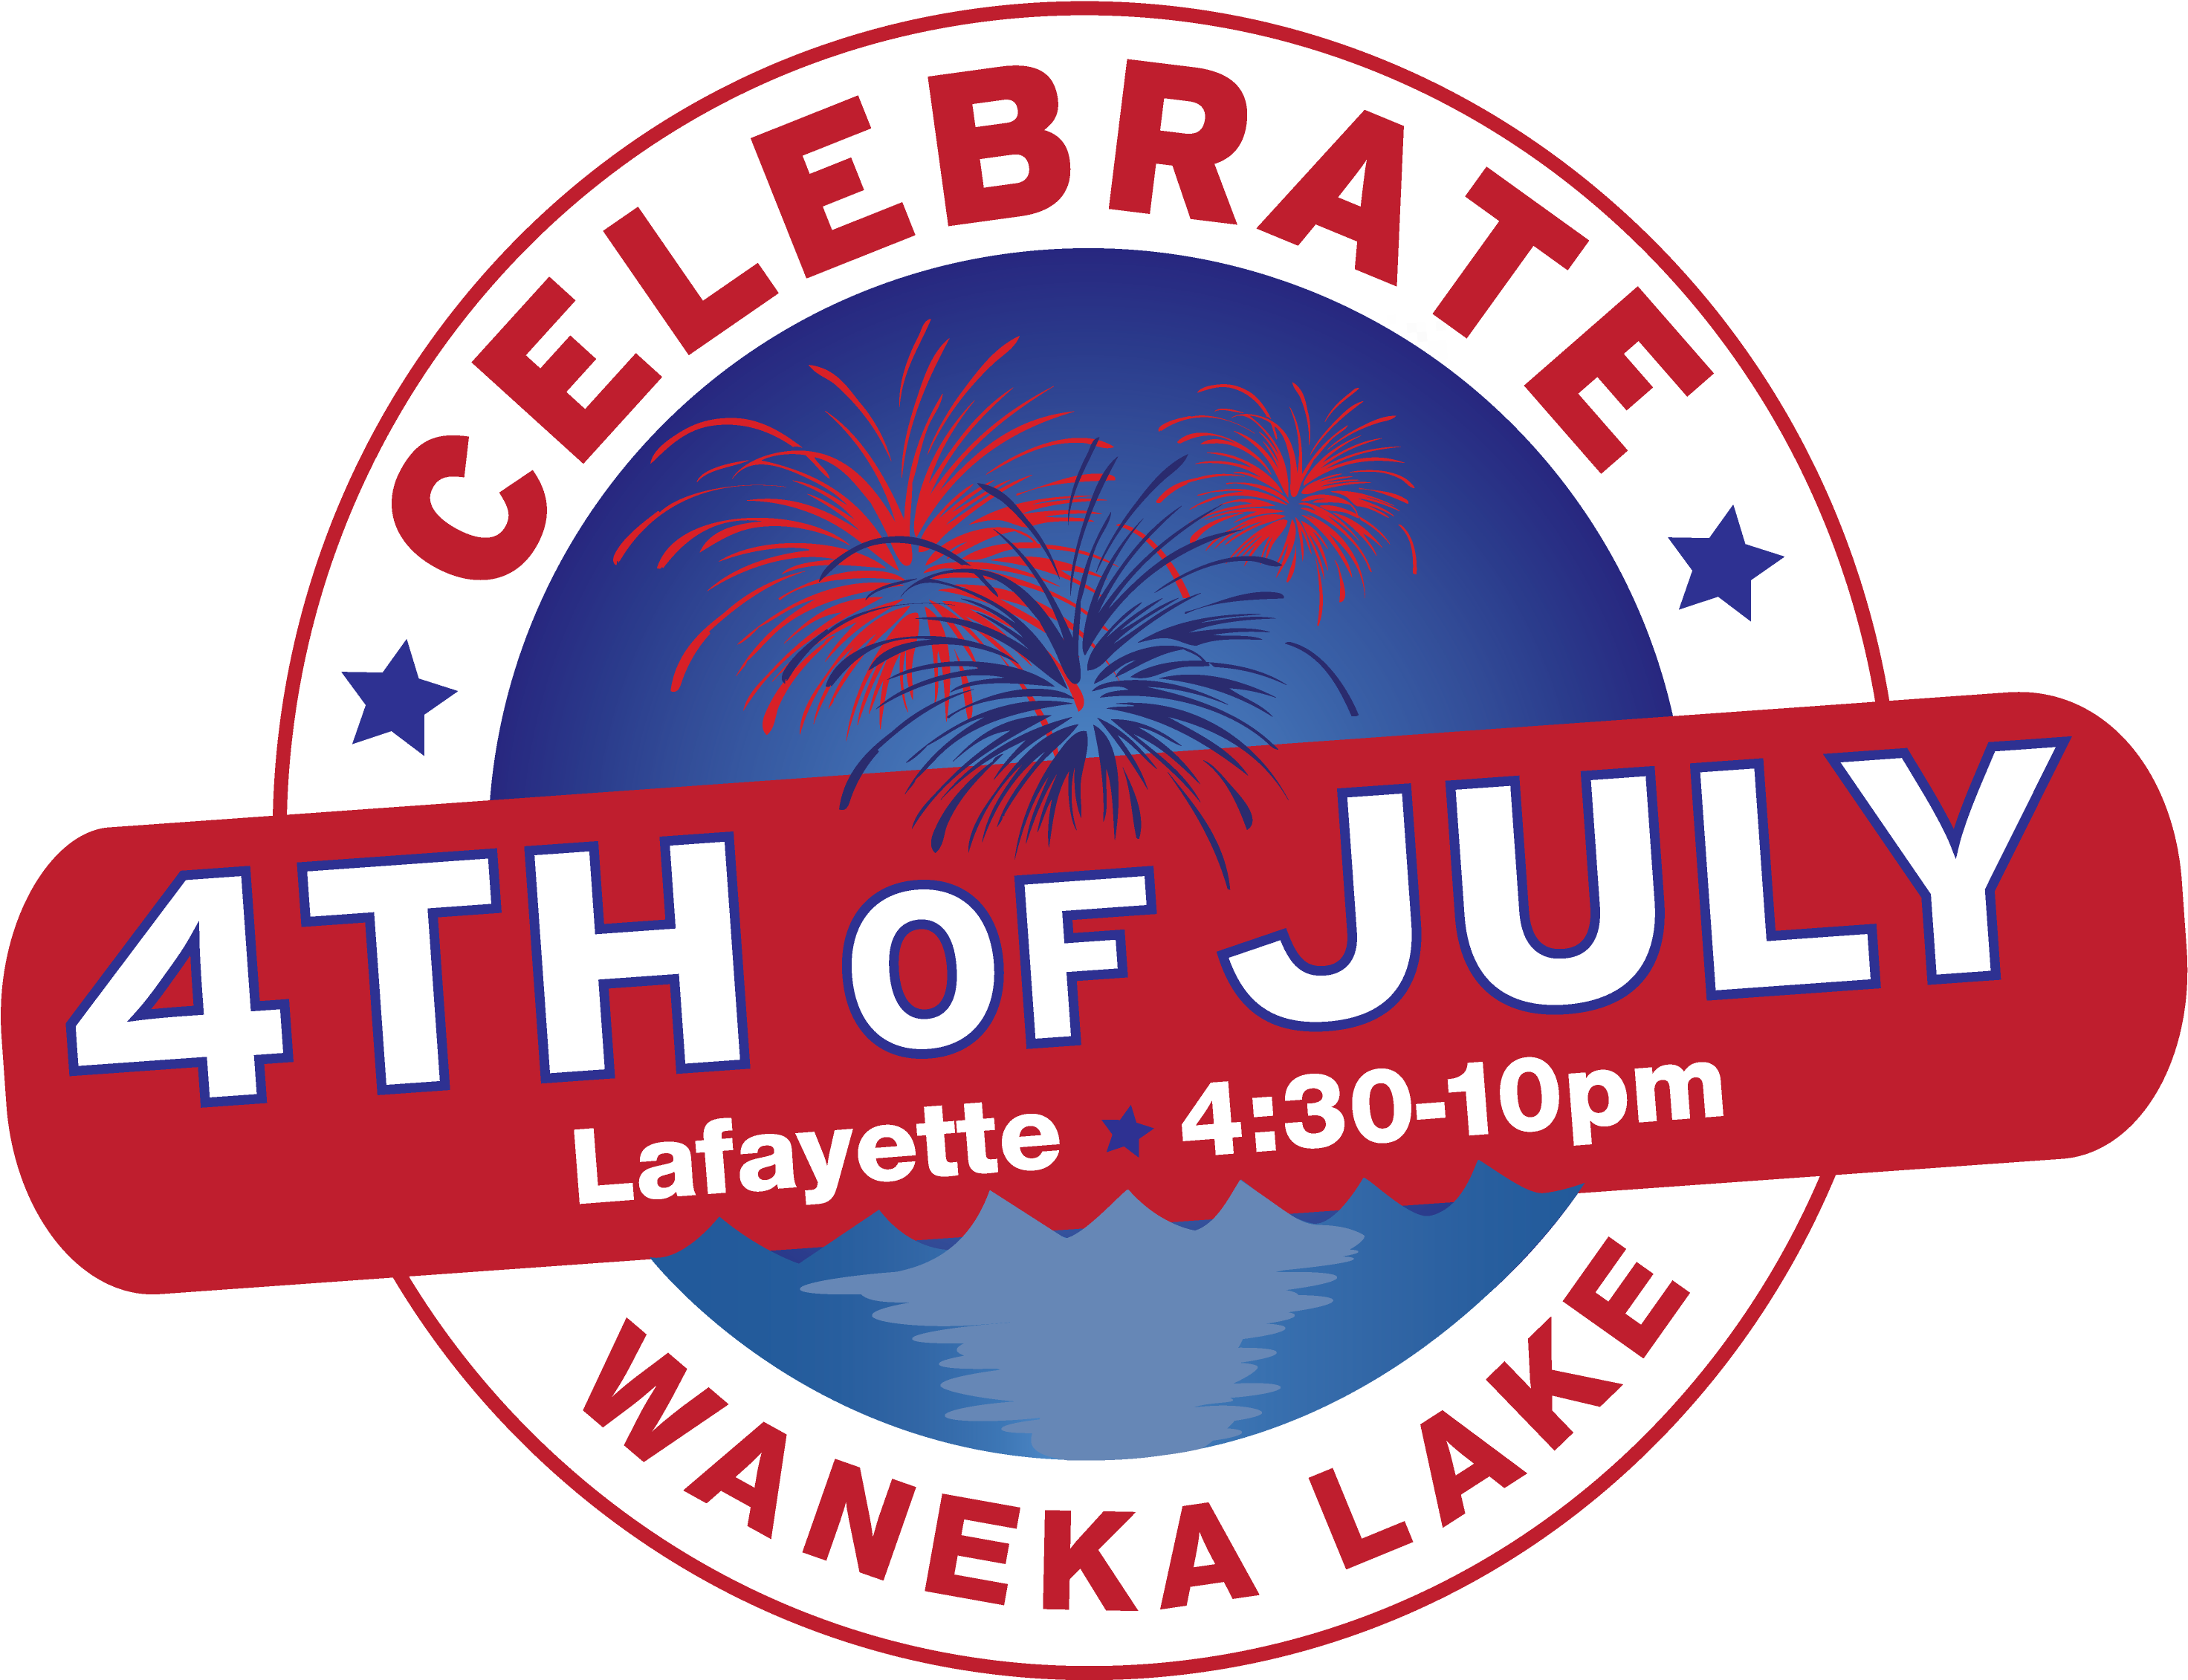 4thof July Celebration Waneka Lake Lafayette